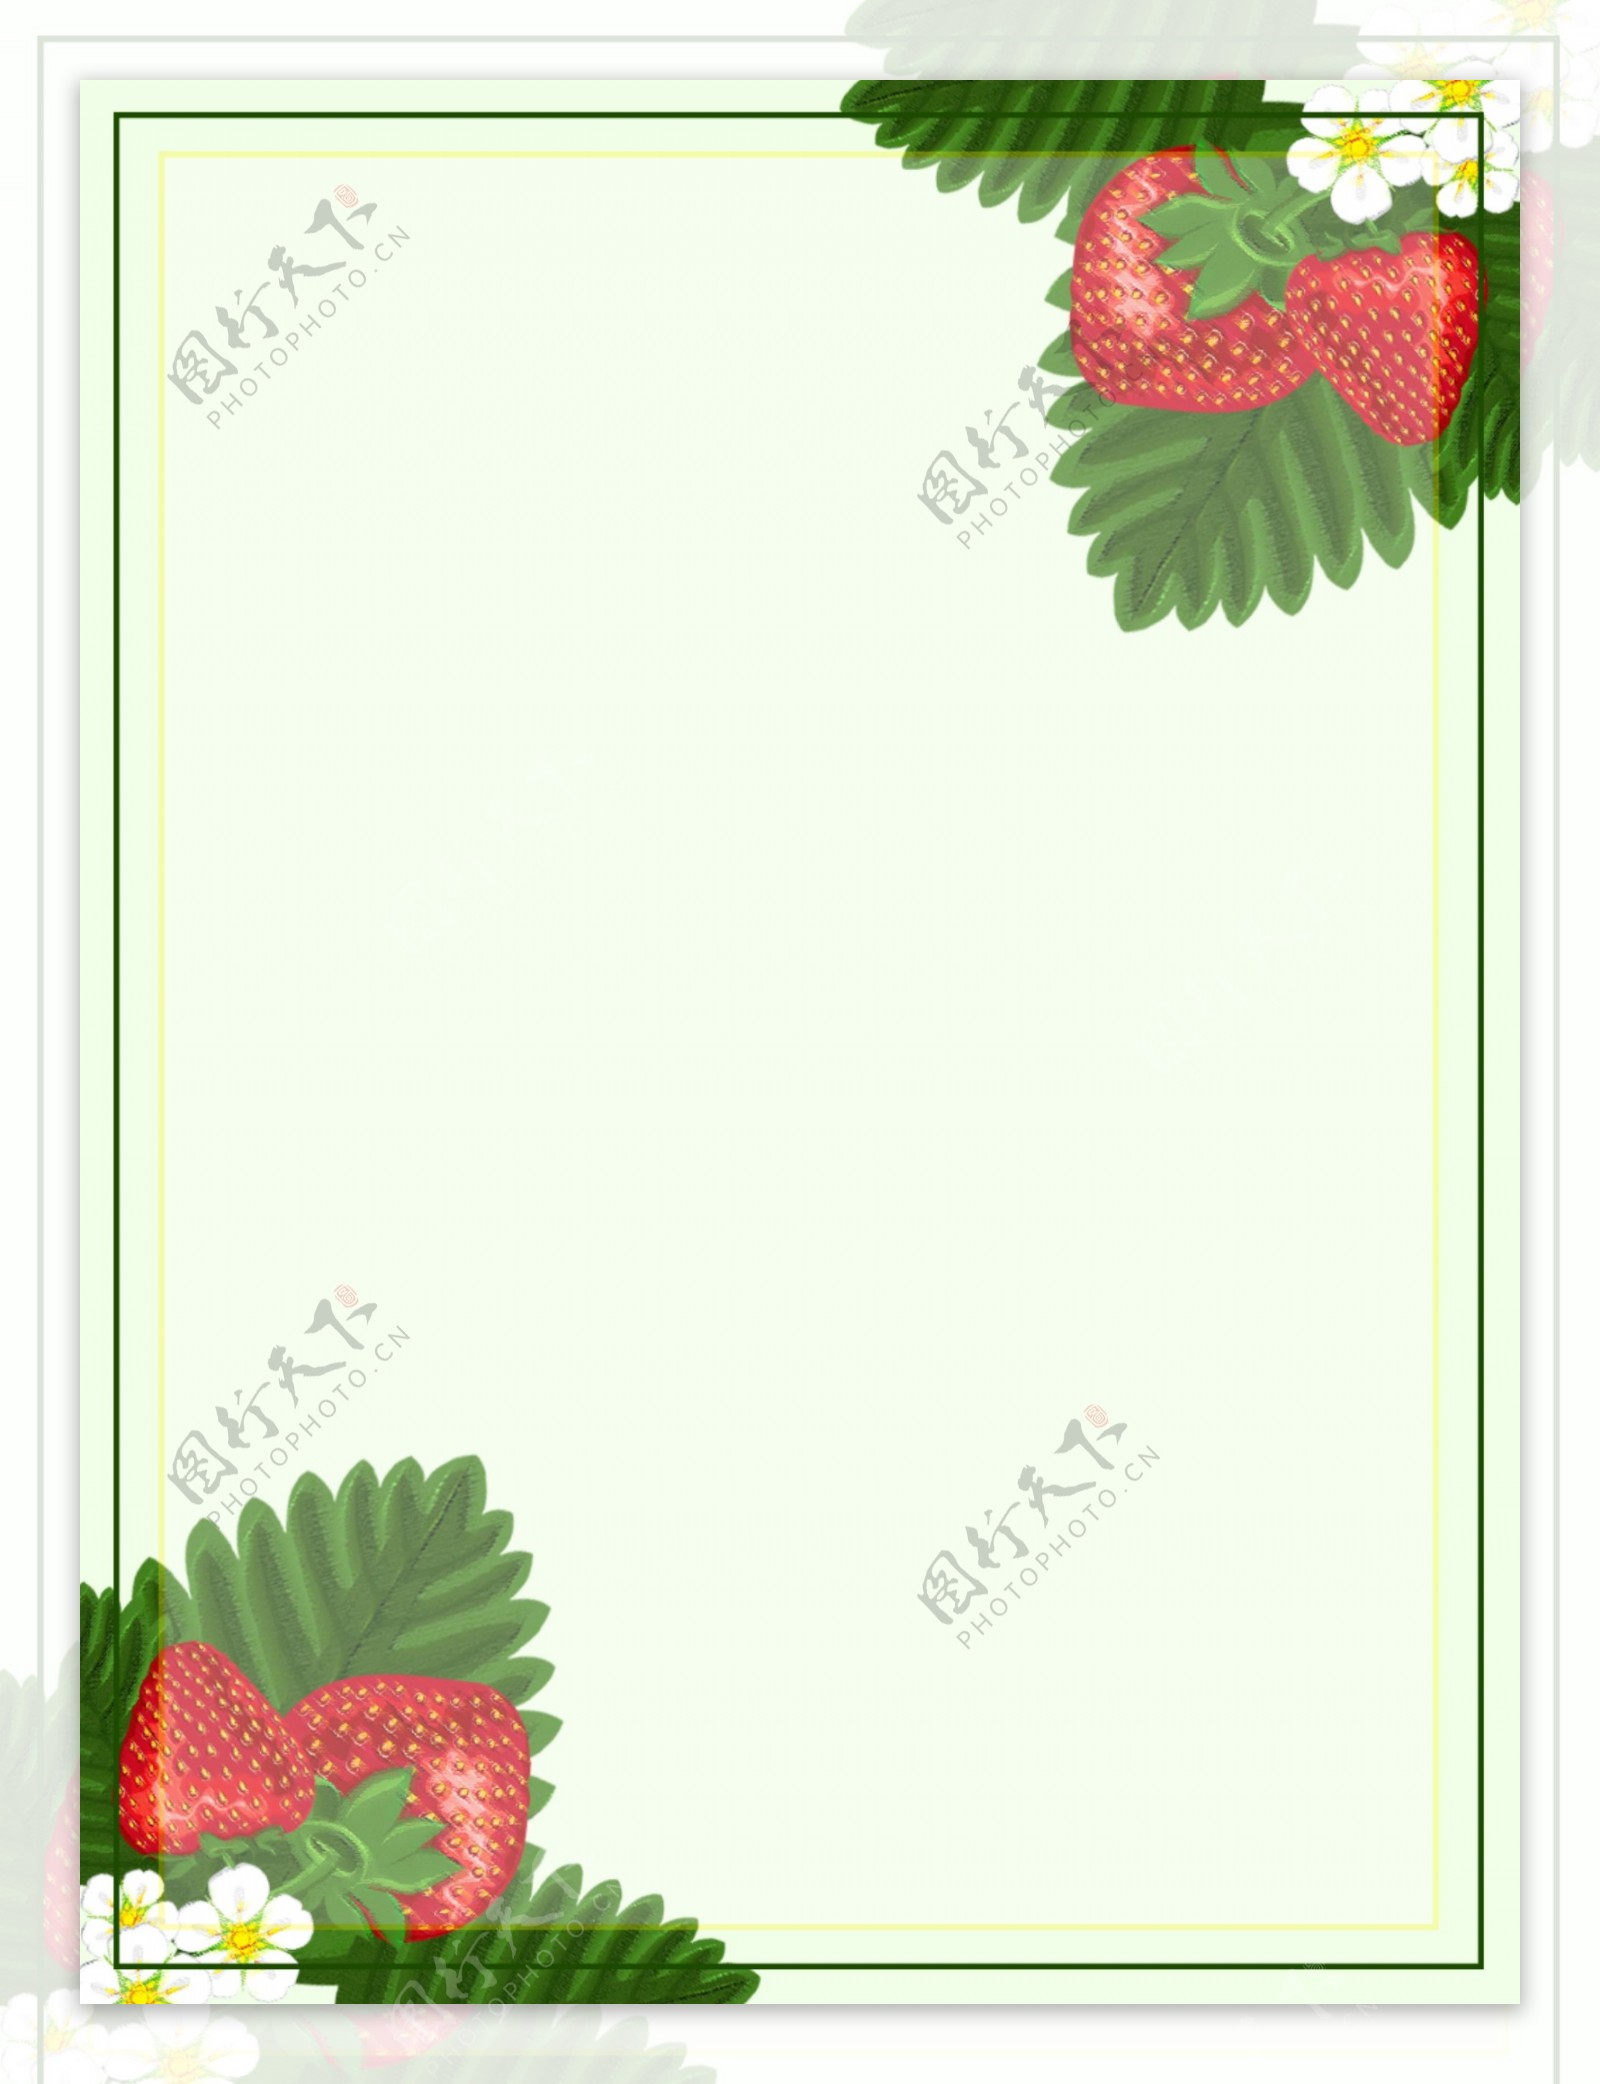 原创手绘水果小清新草莓简约背景素材